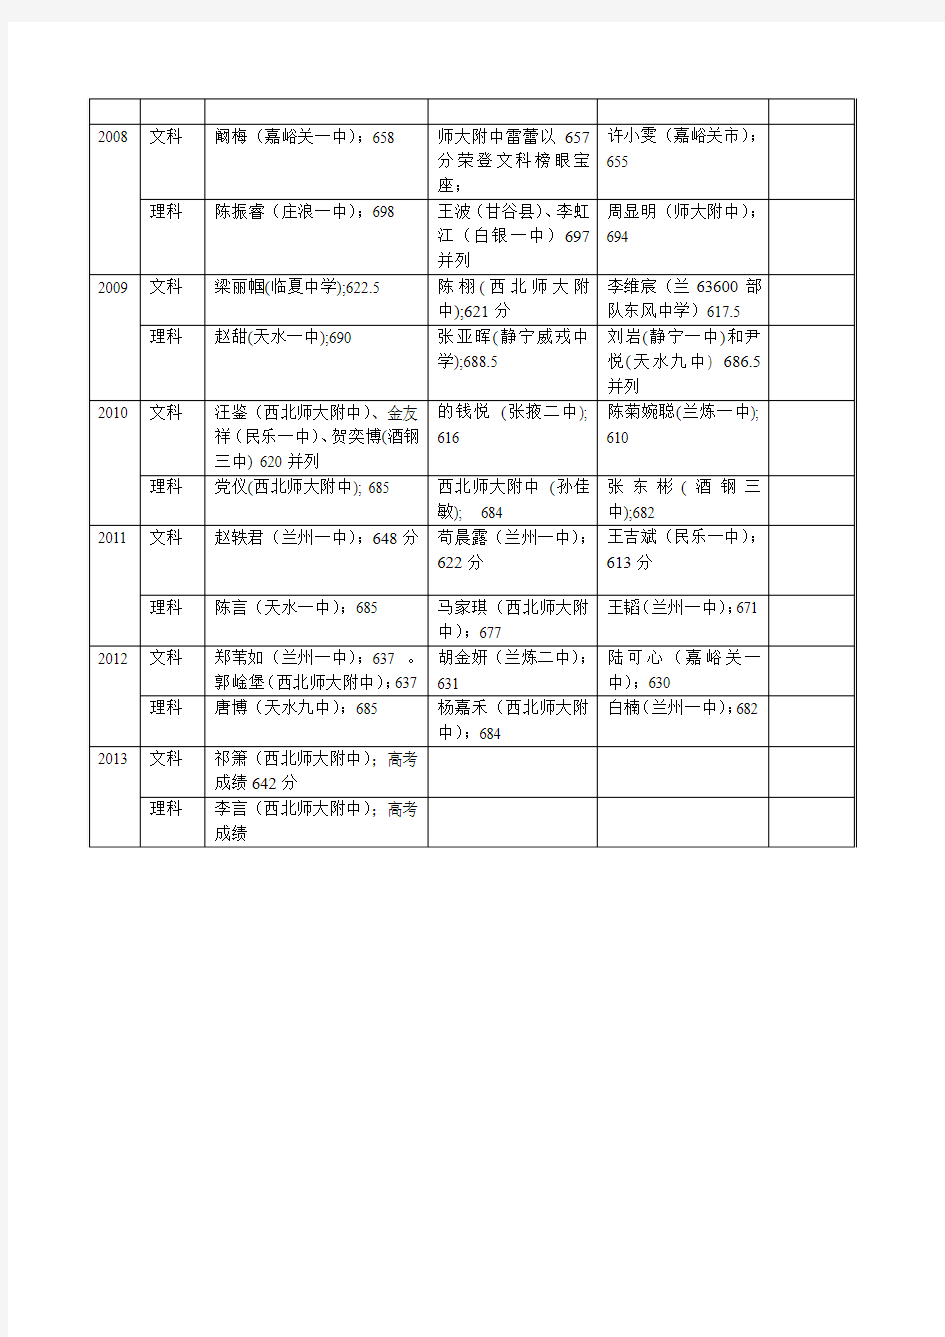 1999-2013年甘肃省高考前三名名单及毕业学校